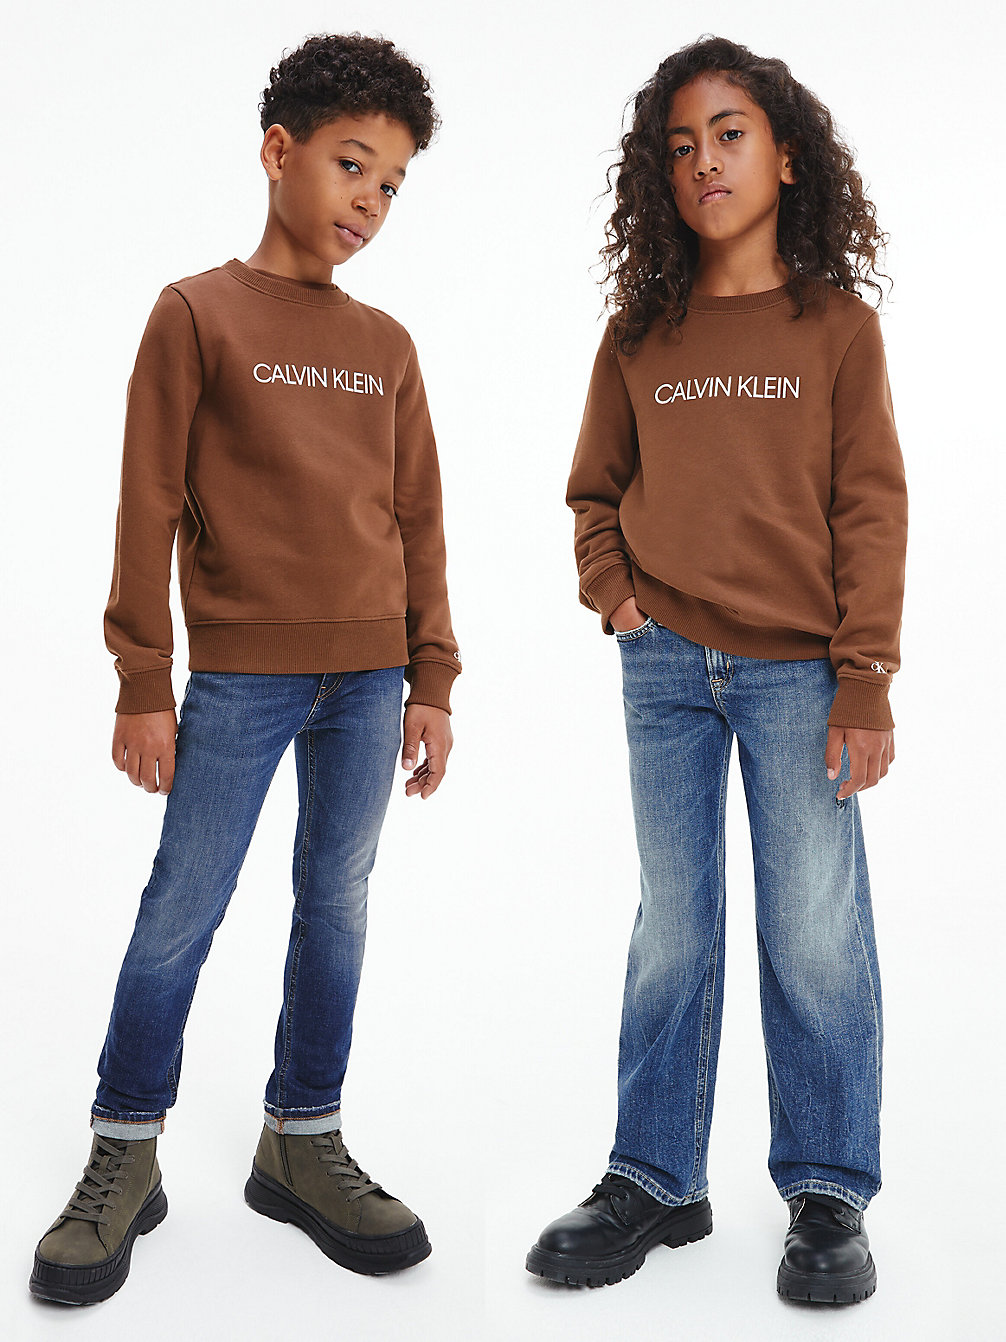 Sudadera Infantil Con Logo > MILK CHOCOLATE > undefined kids unisex > Calvin Klein